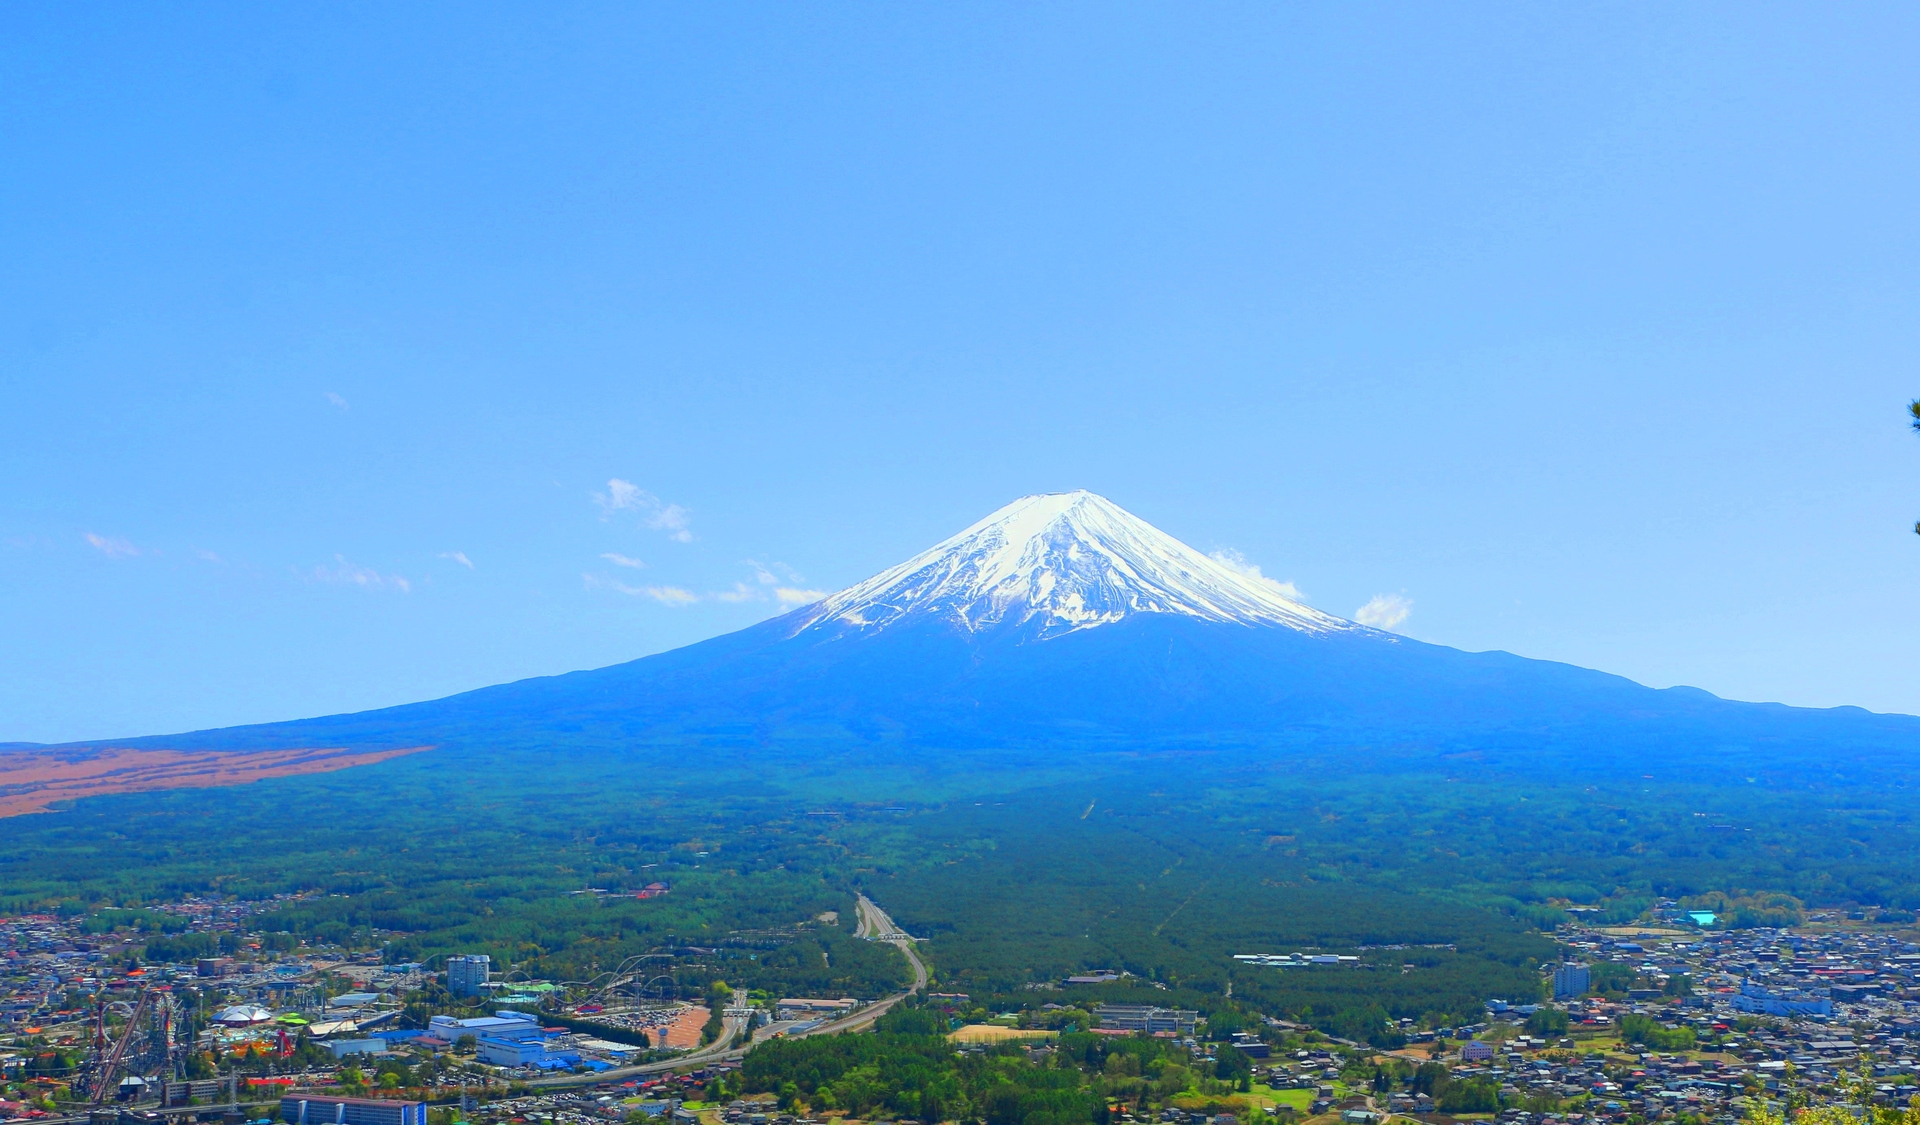 日本の風景 河口湖の街並みと富士山 壁紙19x1125 壁紙館